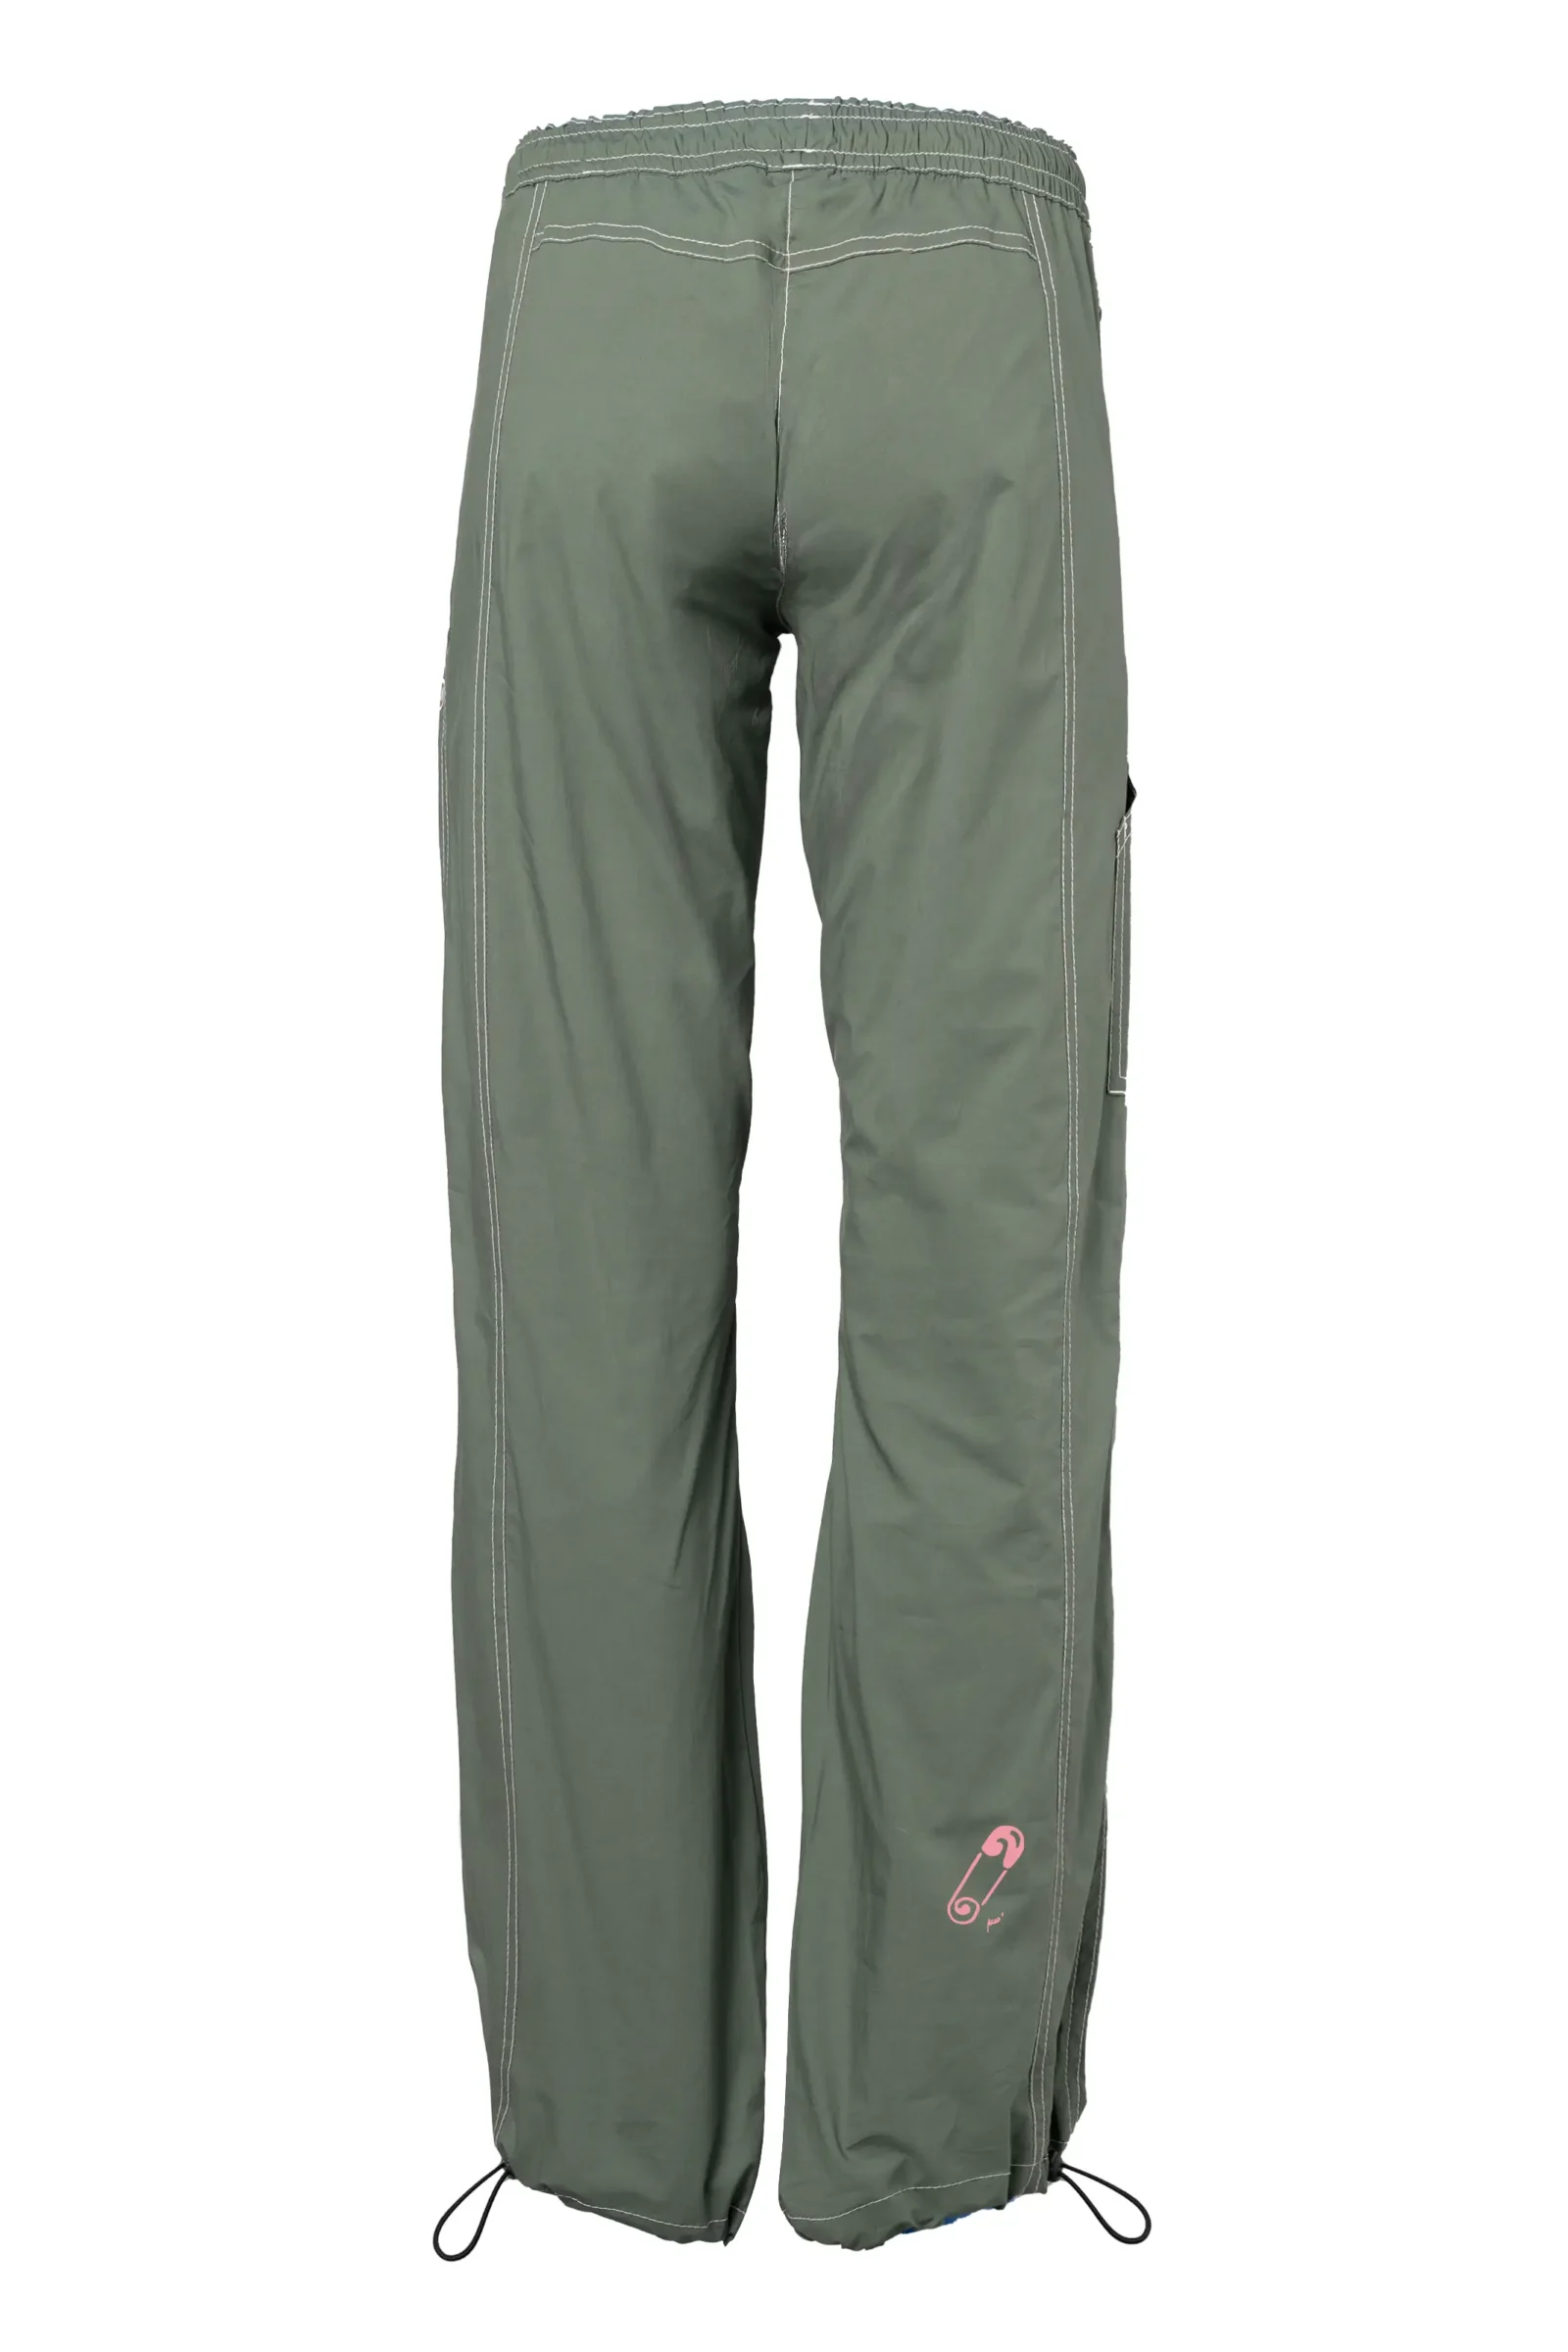 pantalon d'escalade sportive femme - vert militaire - coton stretch - pin graphics - VIOLET MONVIC